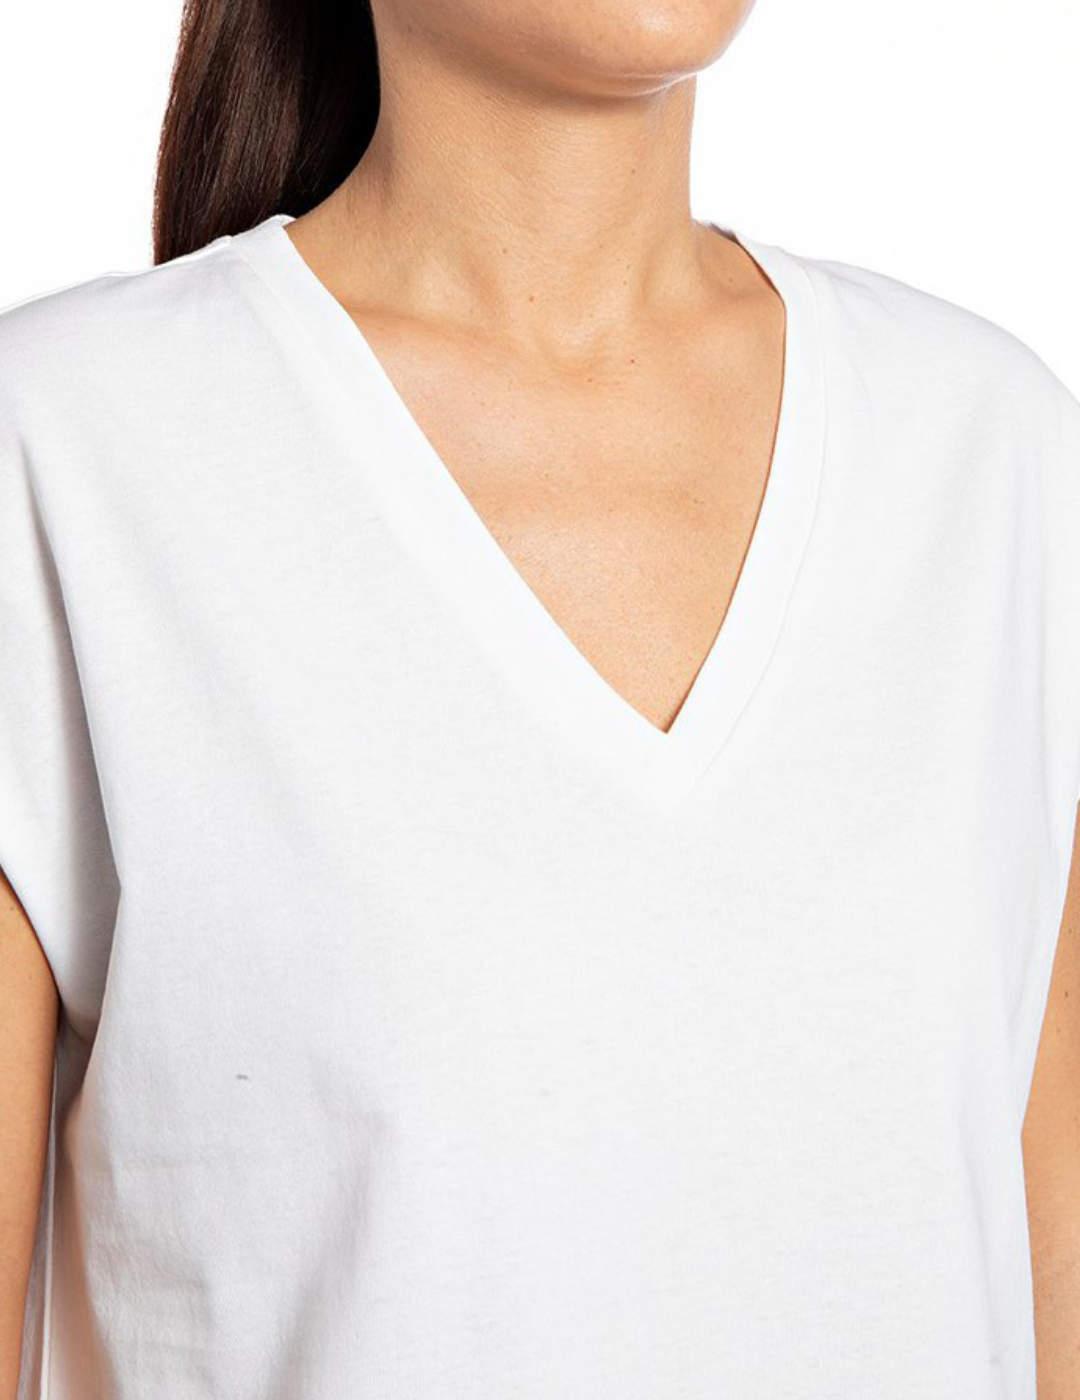 Camiseta Replay blanca  para mujer -b